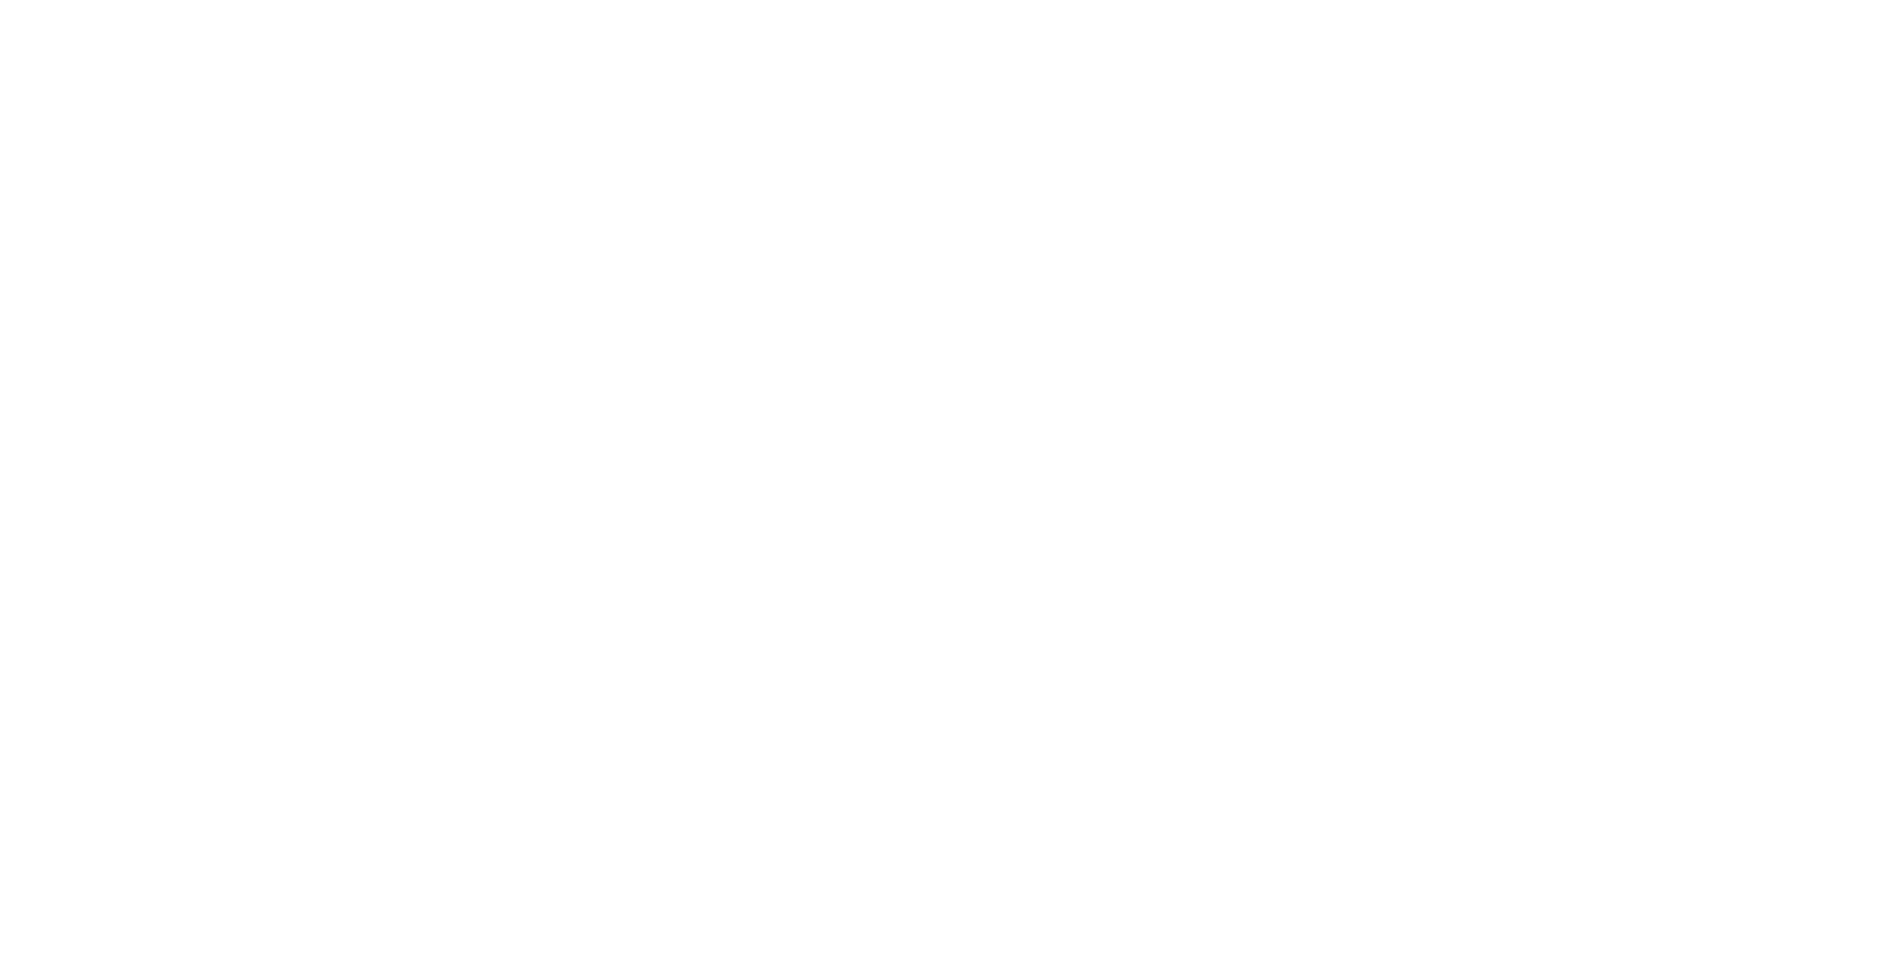 Valdez Institute for Economic Development